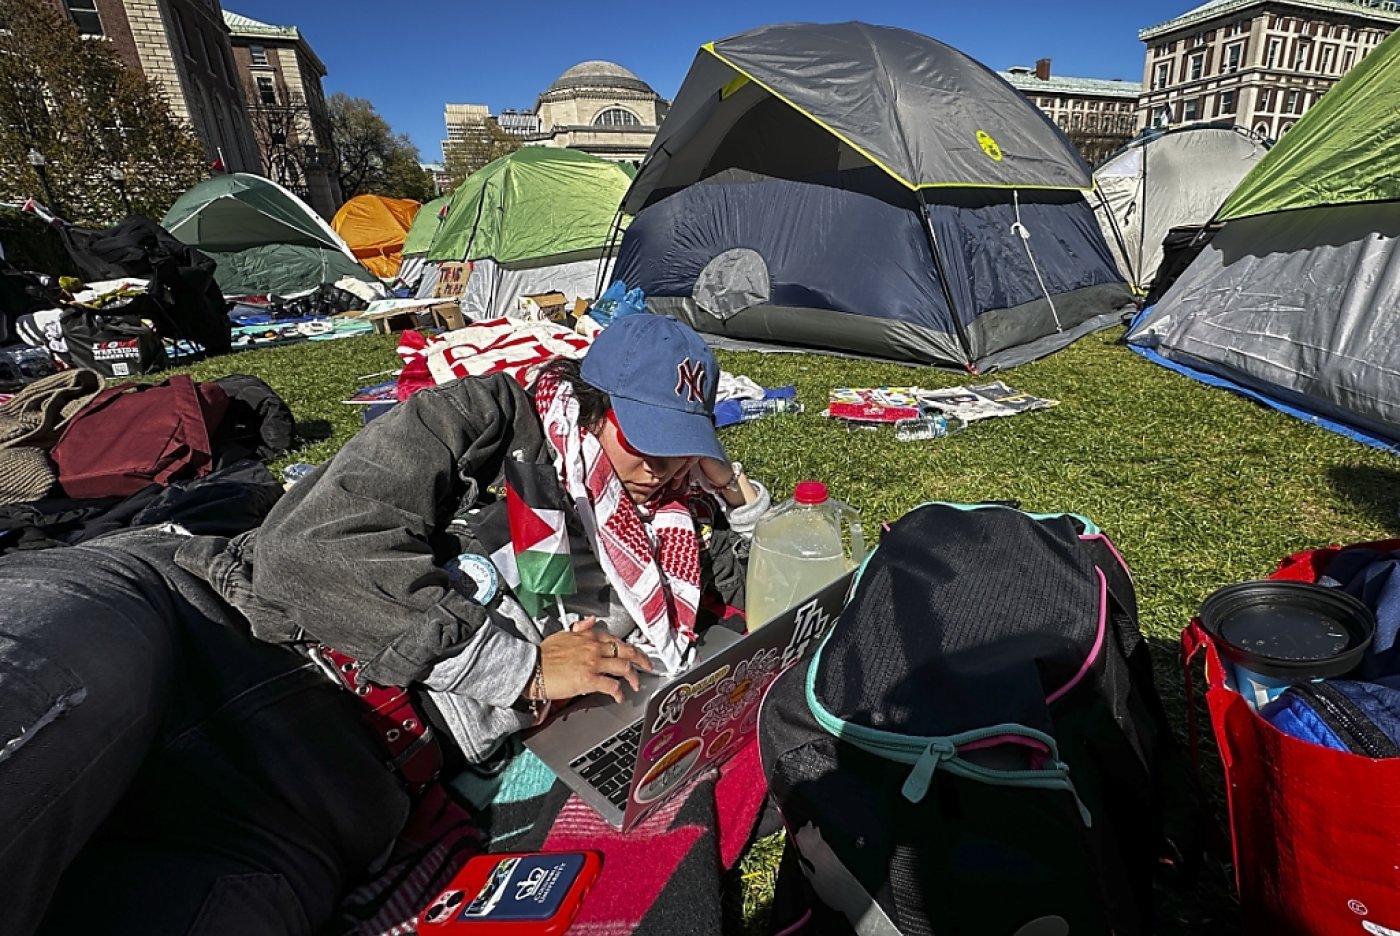 Lundi on pouvait constater des dizaines de tentes plantées sur la grande esplanade de l'université de Columbia. KEYSTONE